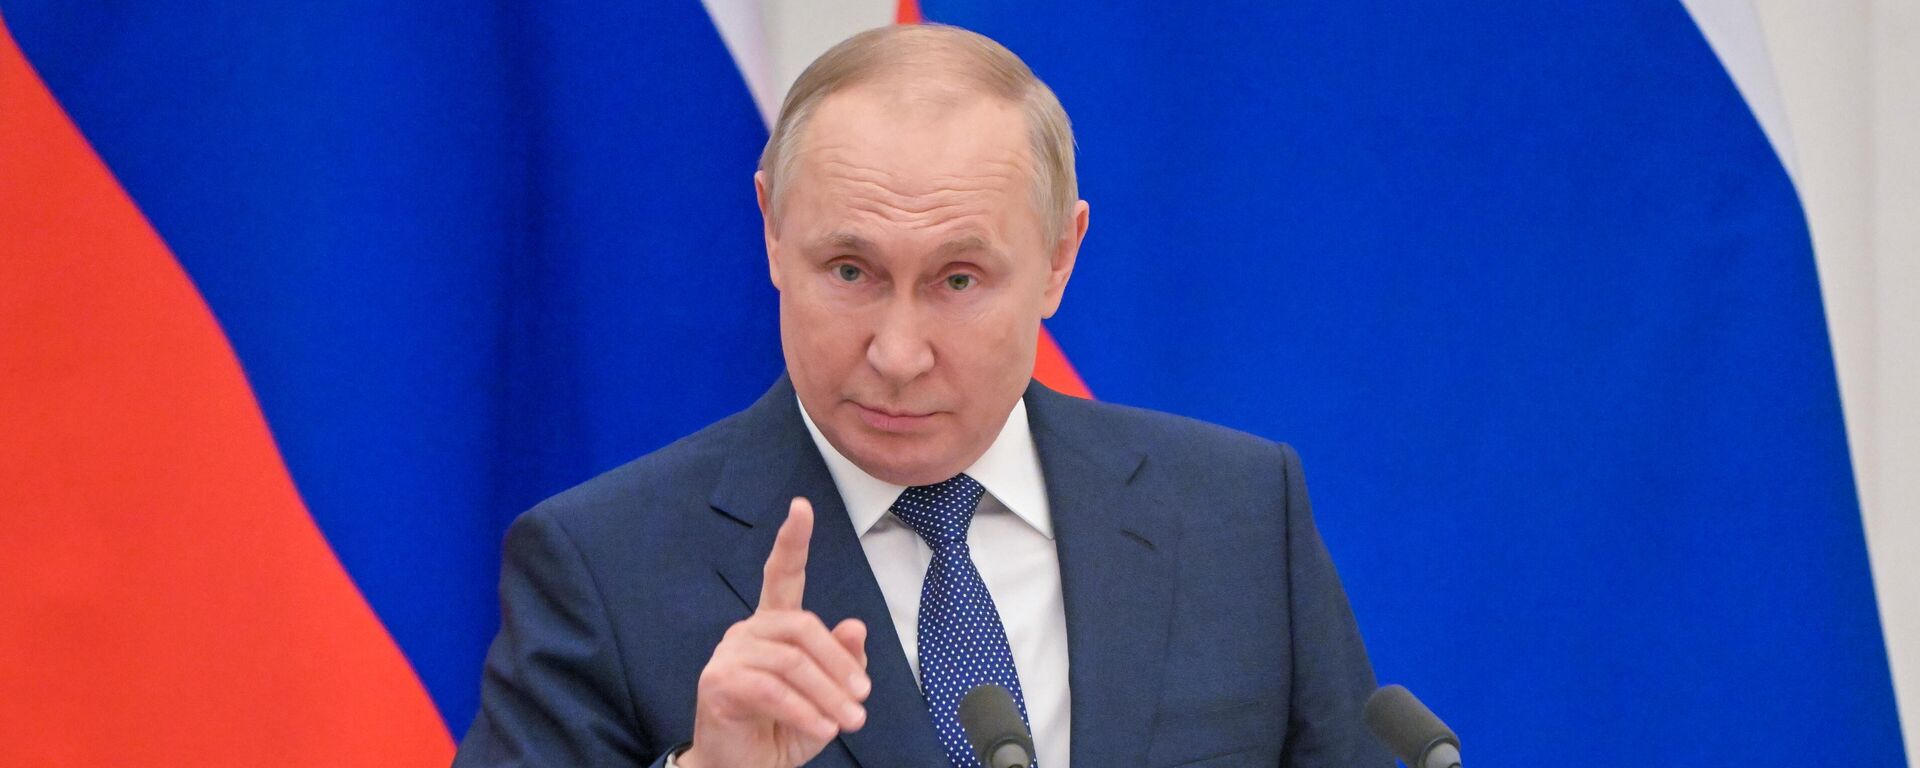 Президент РФ Владимир Путин на пресс-конференции после переговоров с президентом Франции Эммануэлем Макроном в Кремле, 8 февраля 2022 - Sputnik Латвия, 1920, 08.02.2022